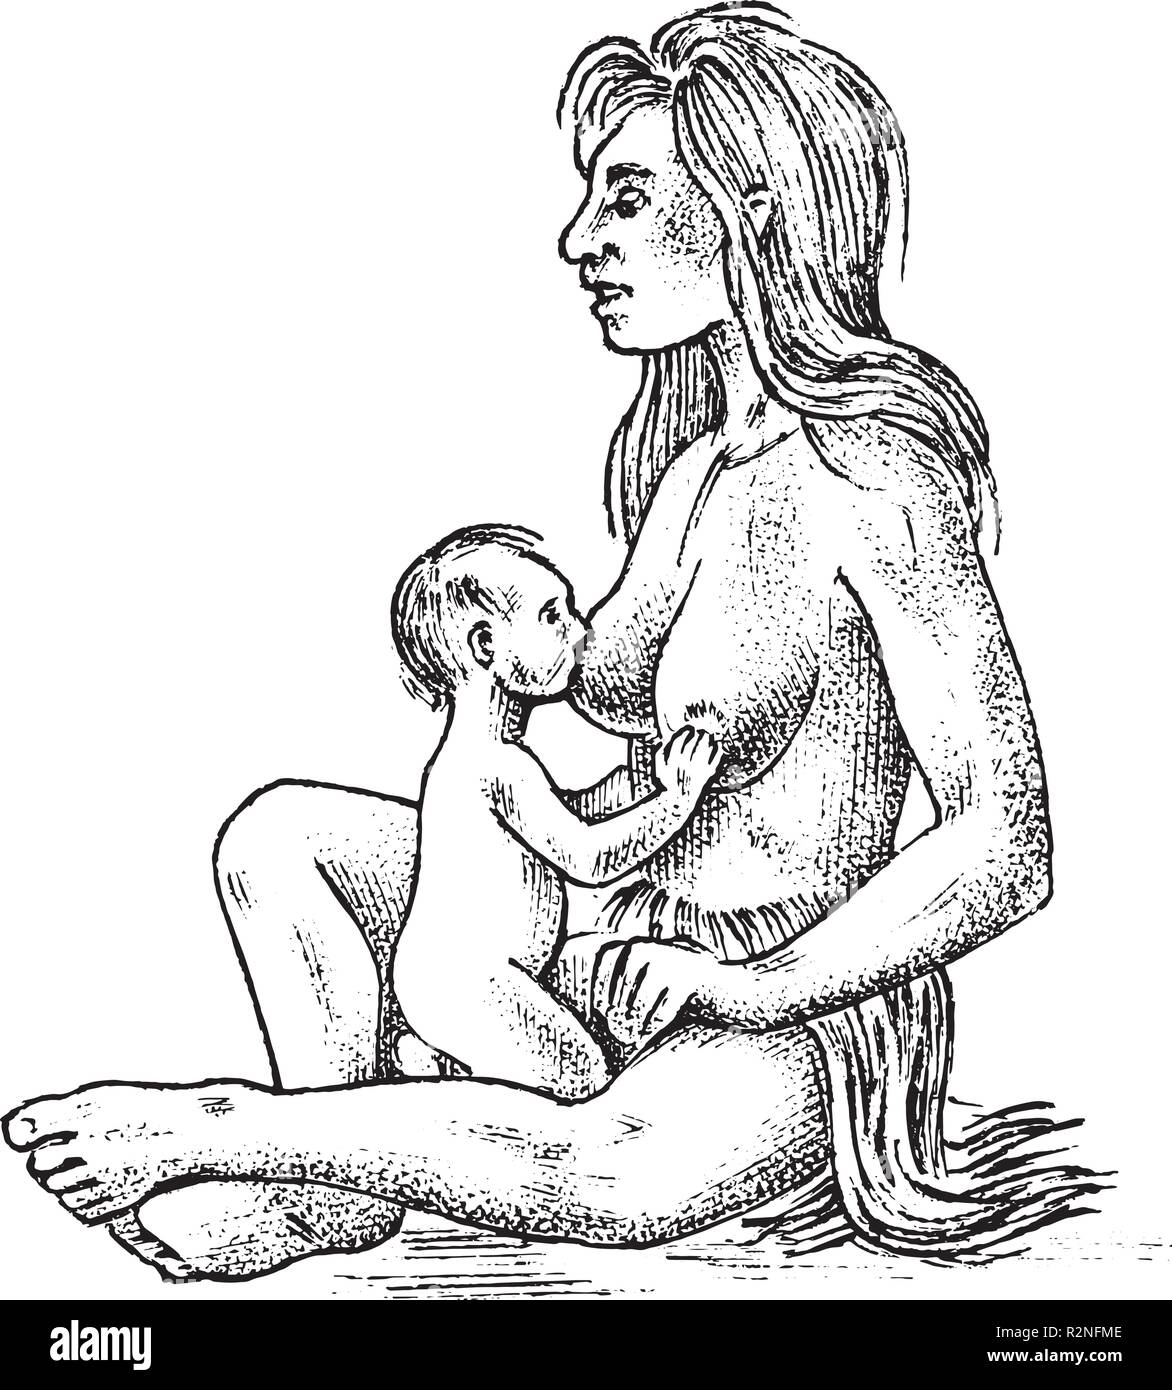 Primitive Menschen. Prähistorischen Periode, alten Stammes, Höhle Barbar Frau mit einem Kind. Hand gezeichnete Skizze. Graviert monochrome Darstellung. Stock Vektor